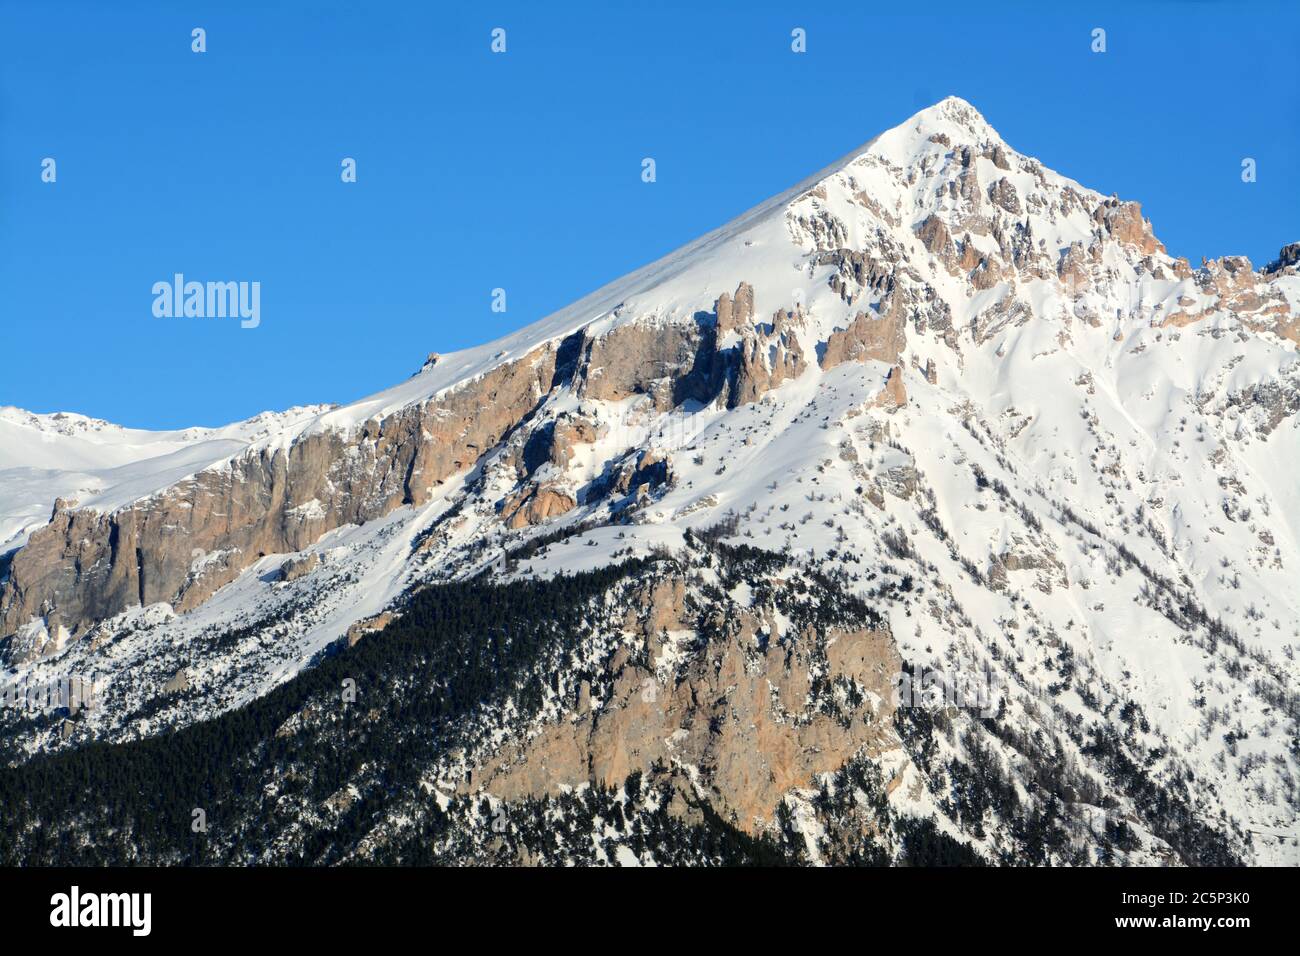 Mount Seguret ist hoch m. 2,926. Es ist ein Berg aus Dolomitenfelsen in den Cottischen Alpen. Es hat eine charakteristische pyramidenförmige Form und dominiert die Stadt Stockfoto